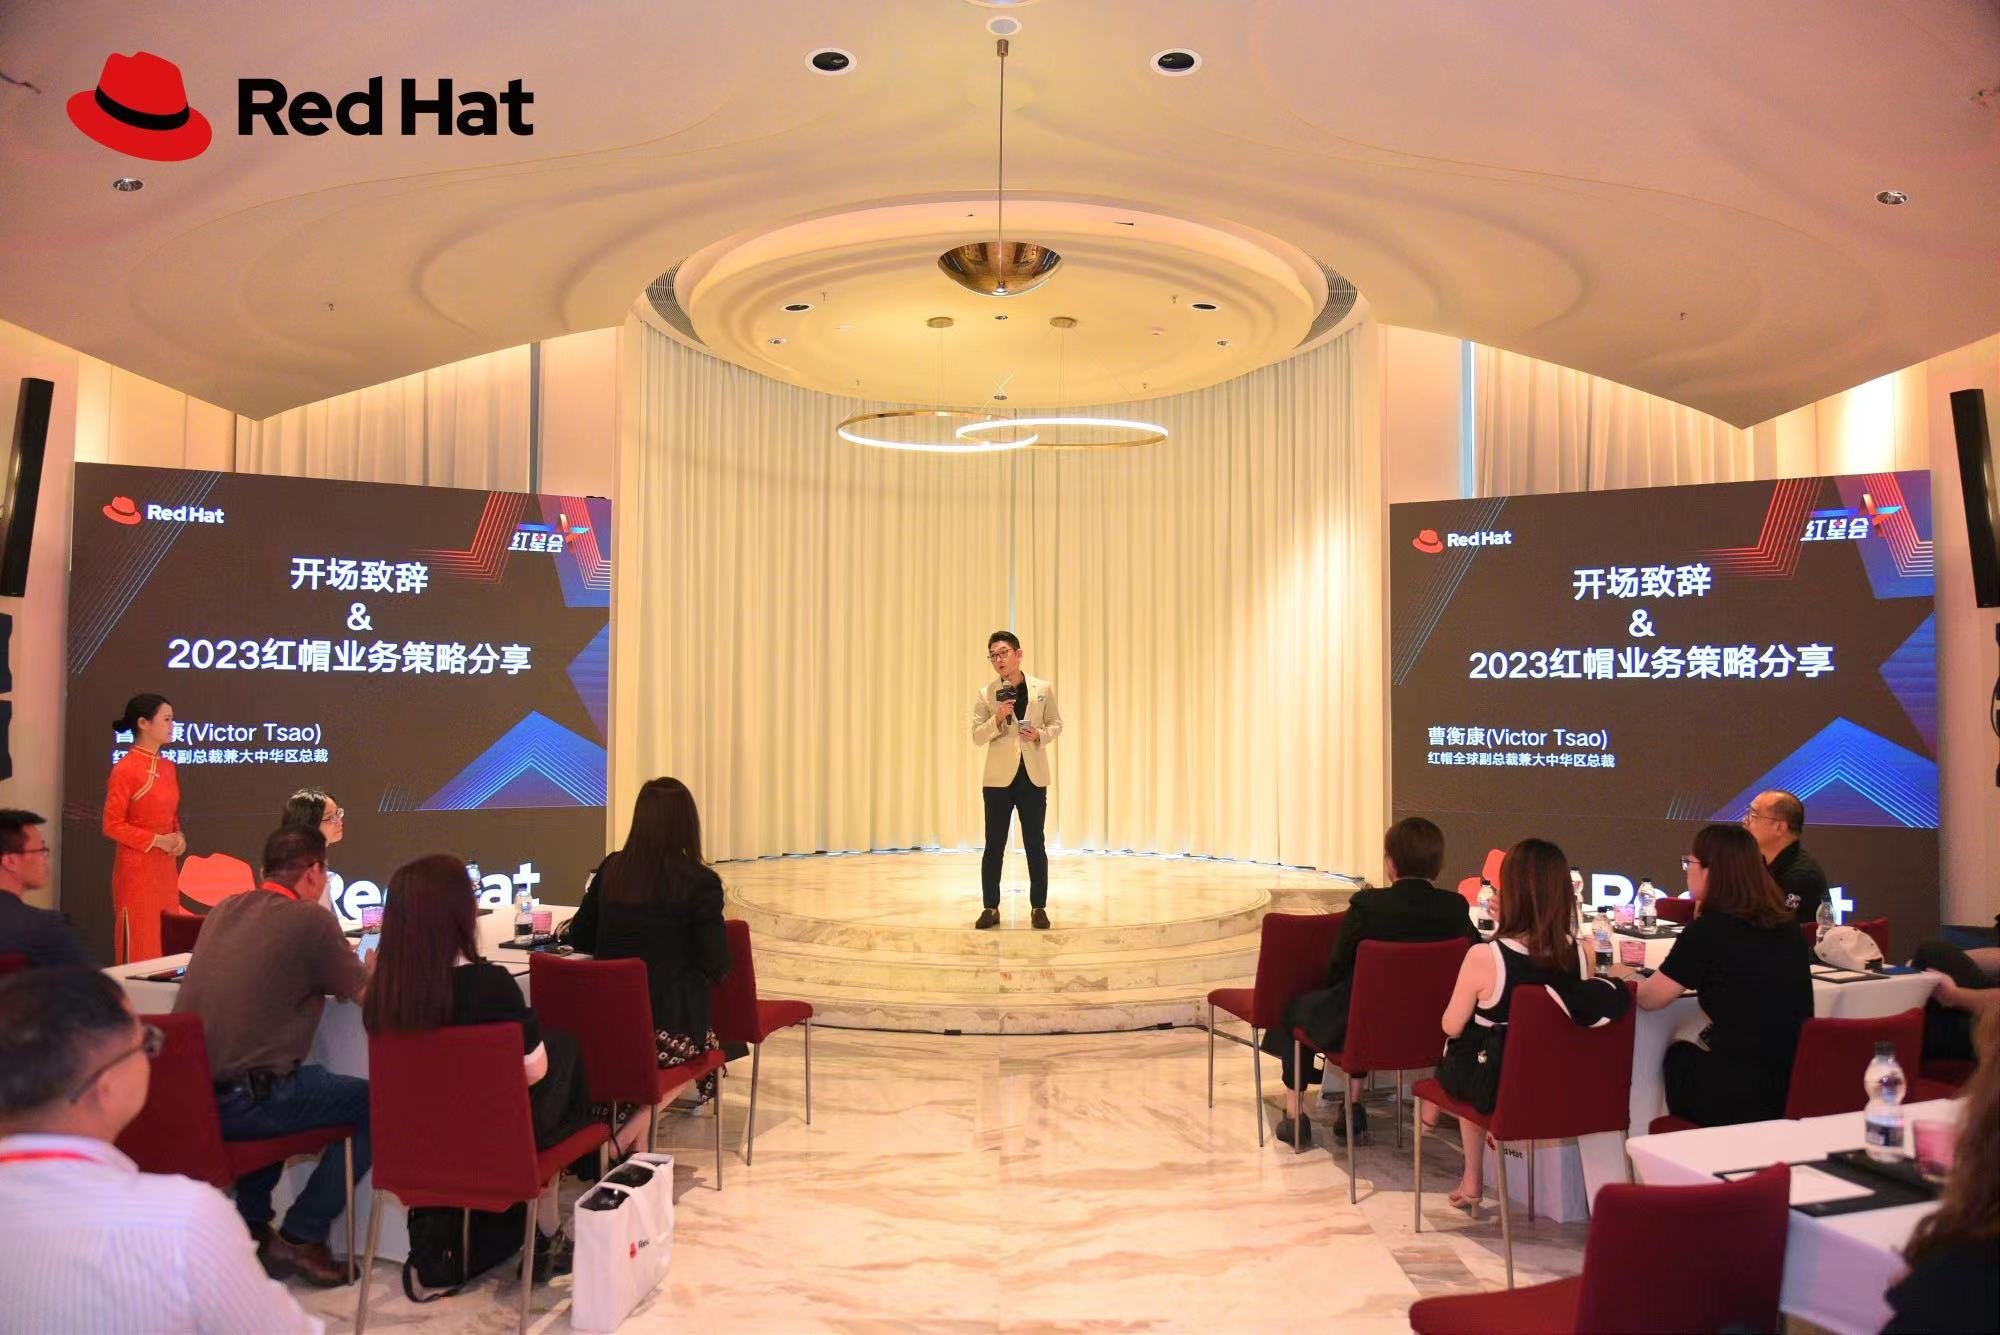 Red Hat 2023 Partner Summit Event.jpg